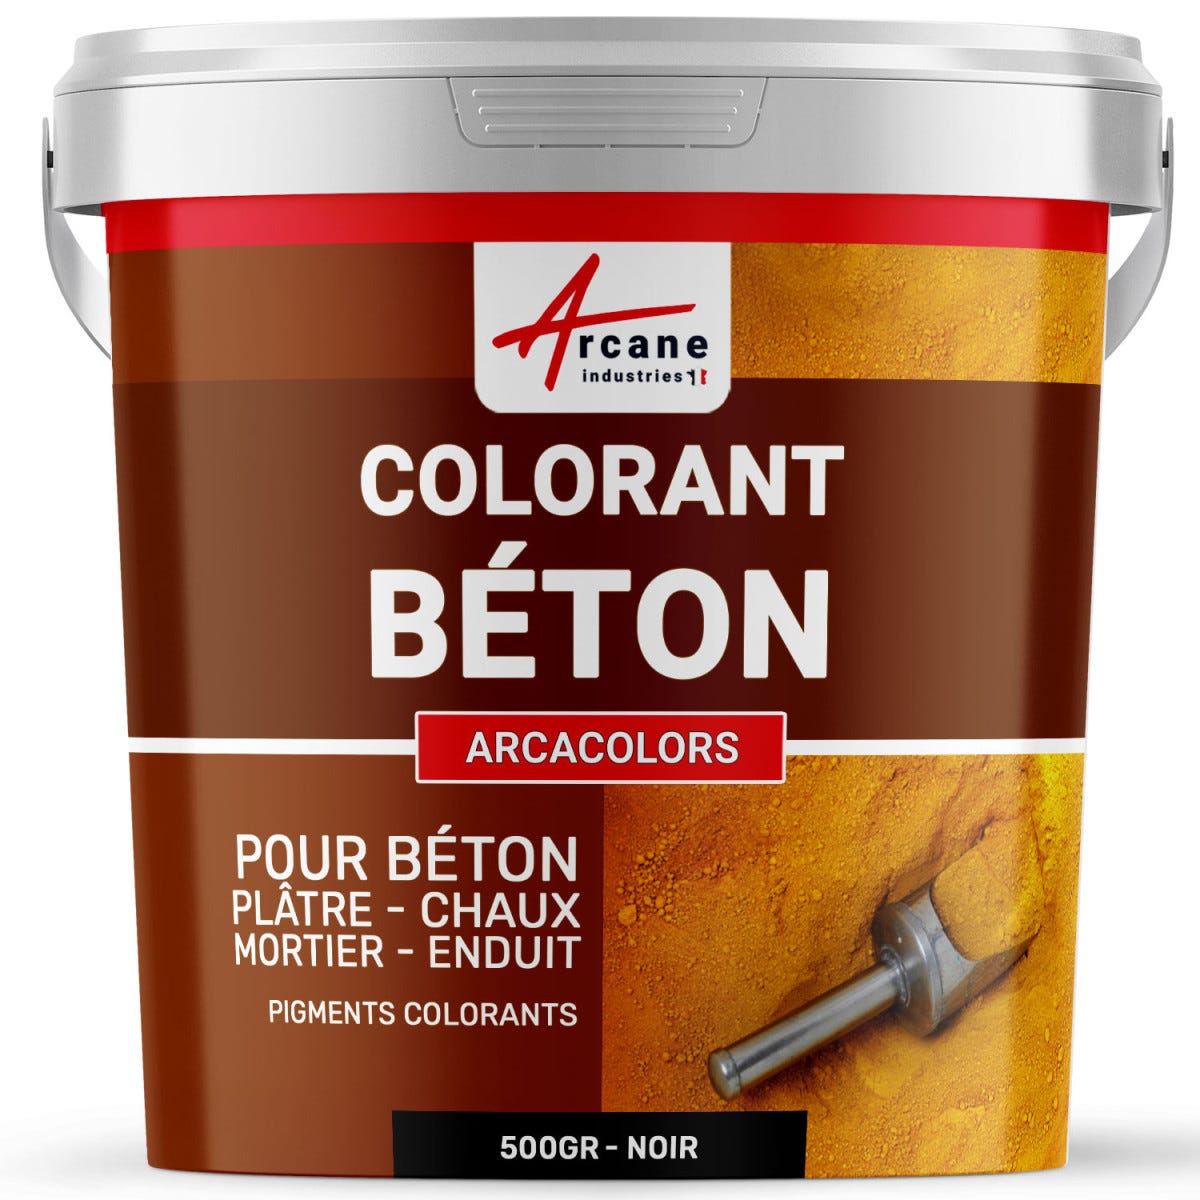 Pigments Colorants Premium pour enduit, béton, mortier, chaux, platre - ARCACOLORS - 4 kg - Vert - ARCANE INDUSTRIES 2